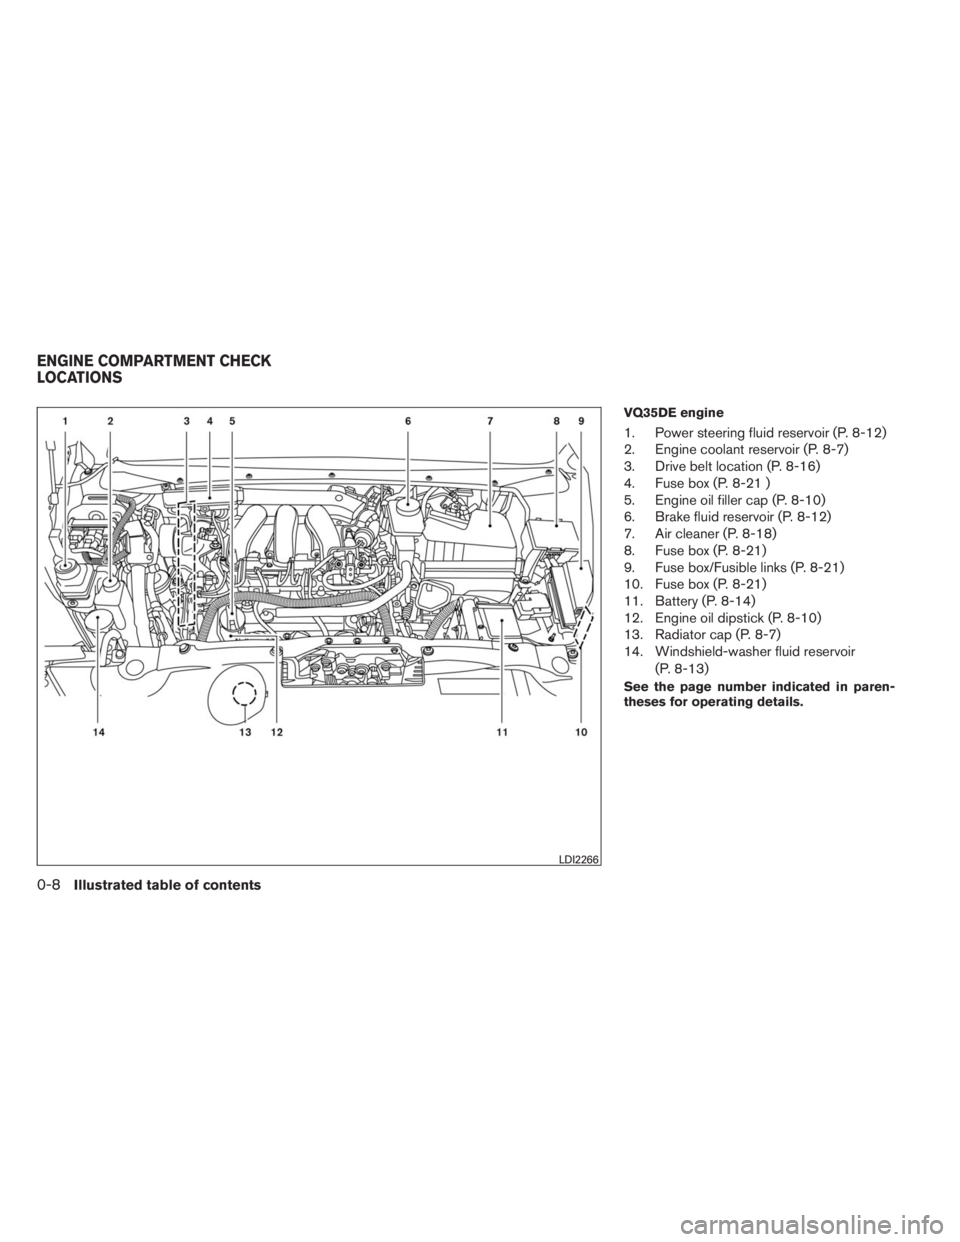 INFINITI QX60 2014  Owners Manual VQ35DE engine
1. Power steering fluid reservoir (P. 8-12)
2. Engine coolant reservoir (P. 8-7)
3. Drive belt location (P. 8-16)
4. Fuse box (P. 8-21 )
5. Engine oil filler cap (P. 8-10)
6. Brake fluid